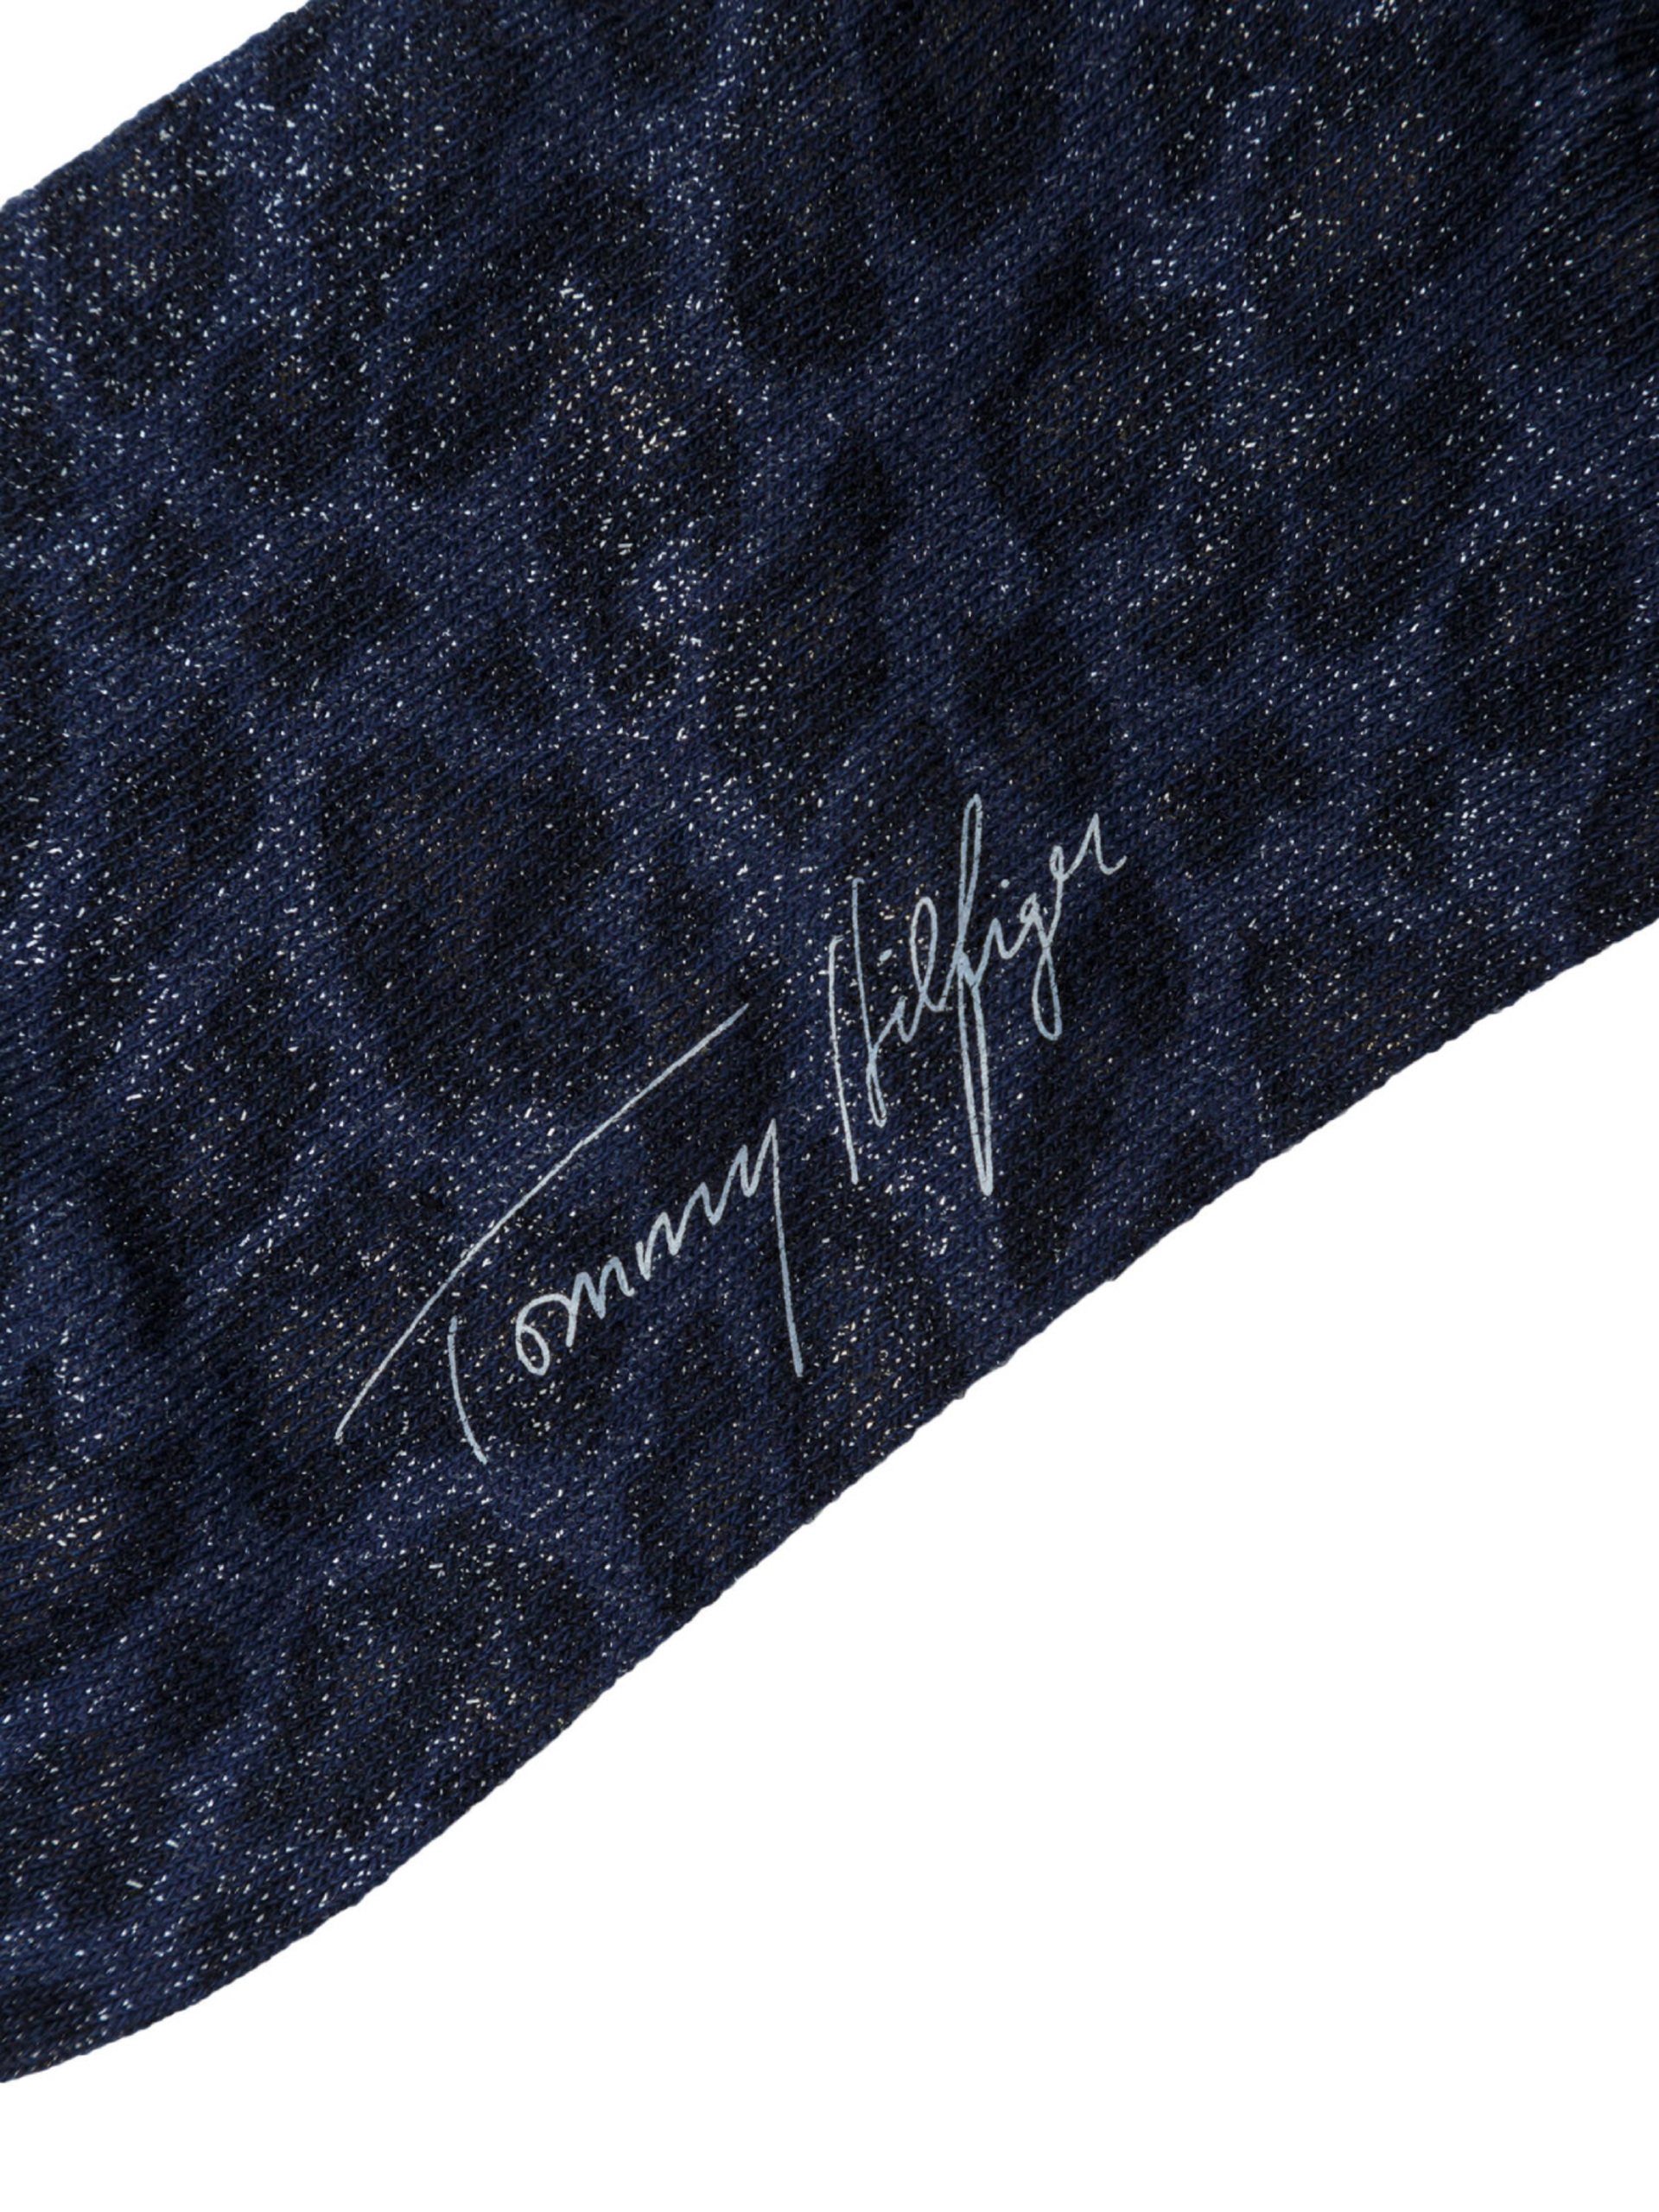 Tommy Hilfiger dámske modré ponožky - 35 (41)